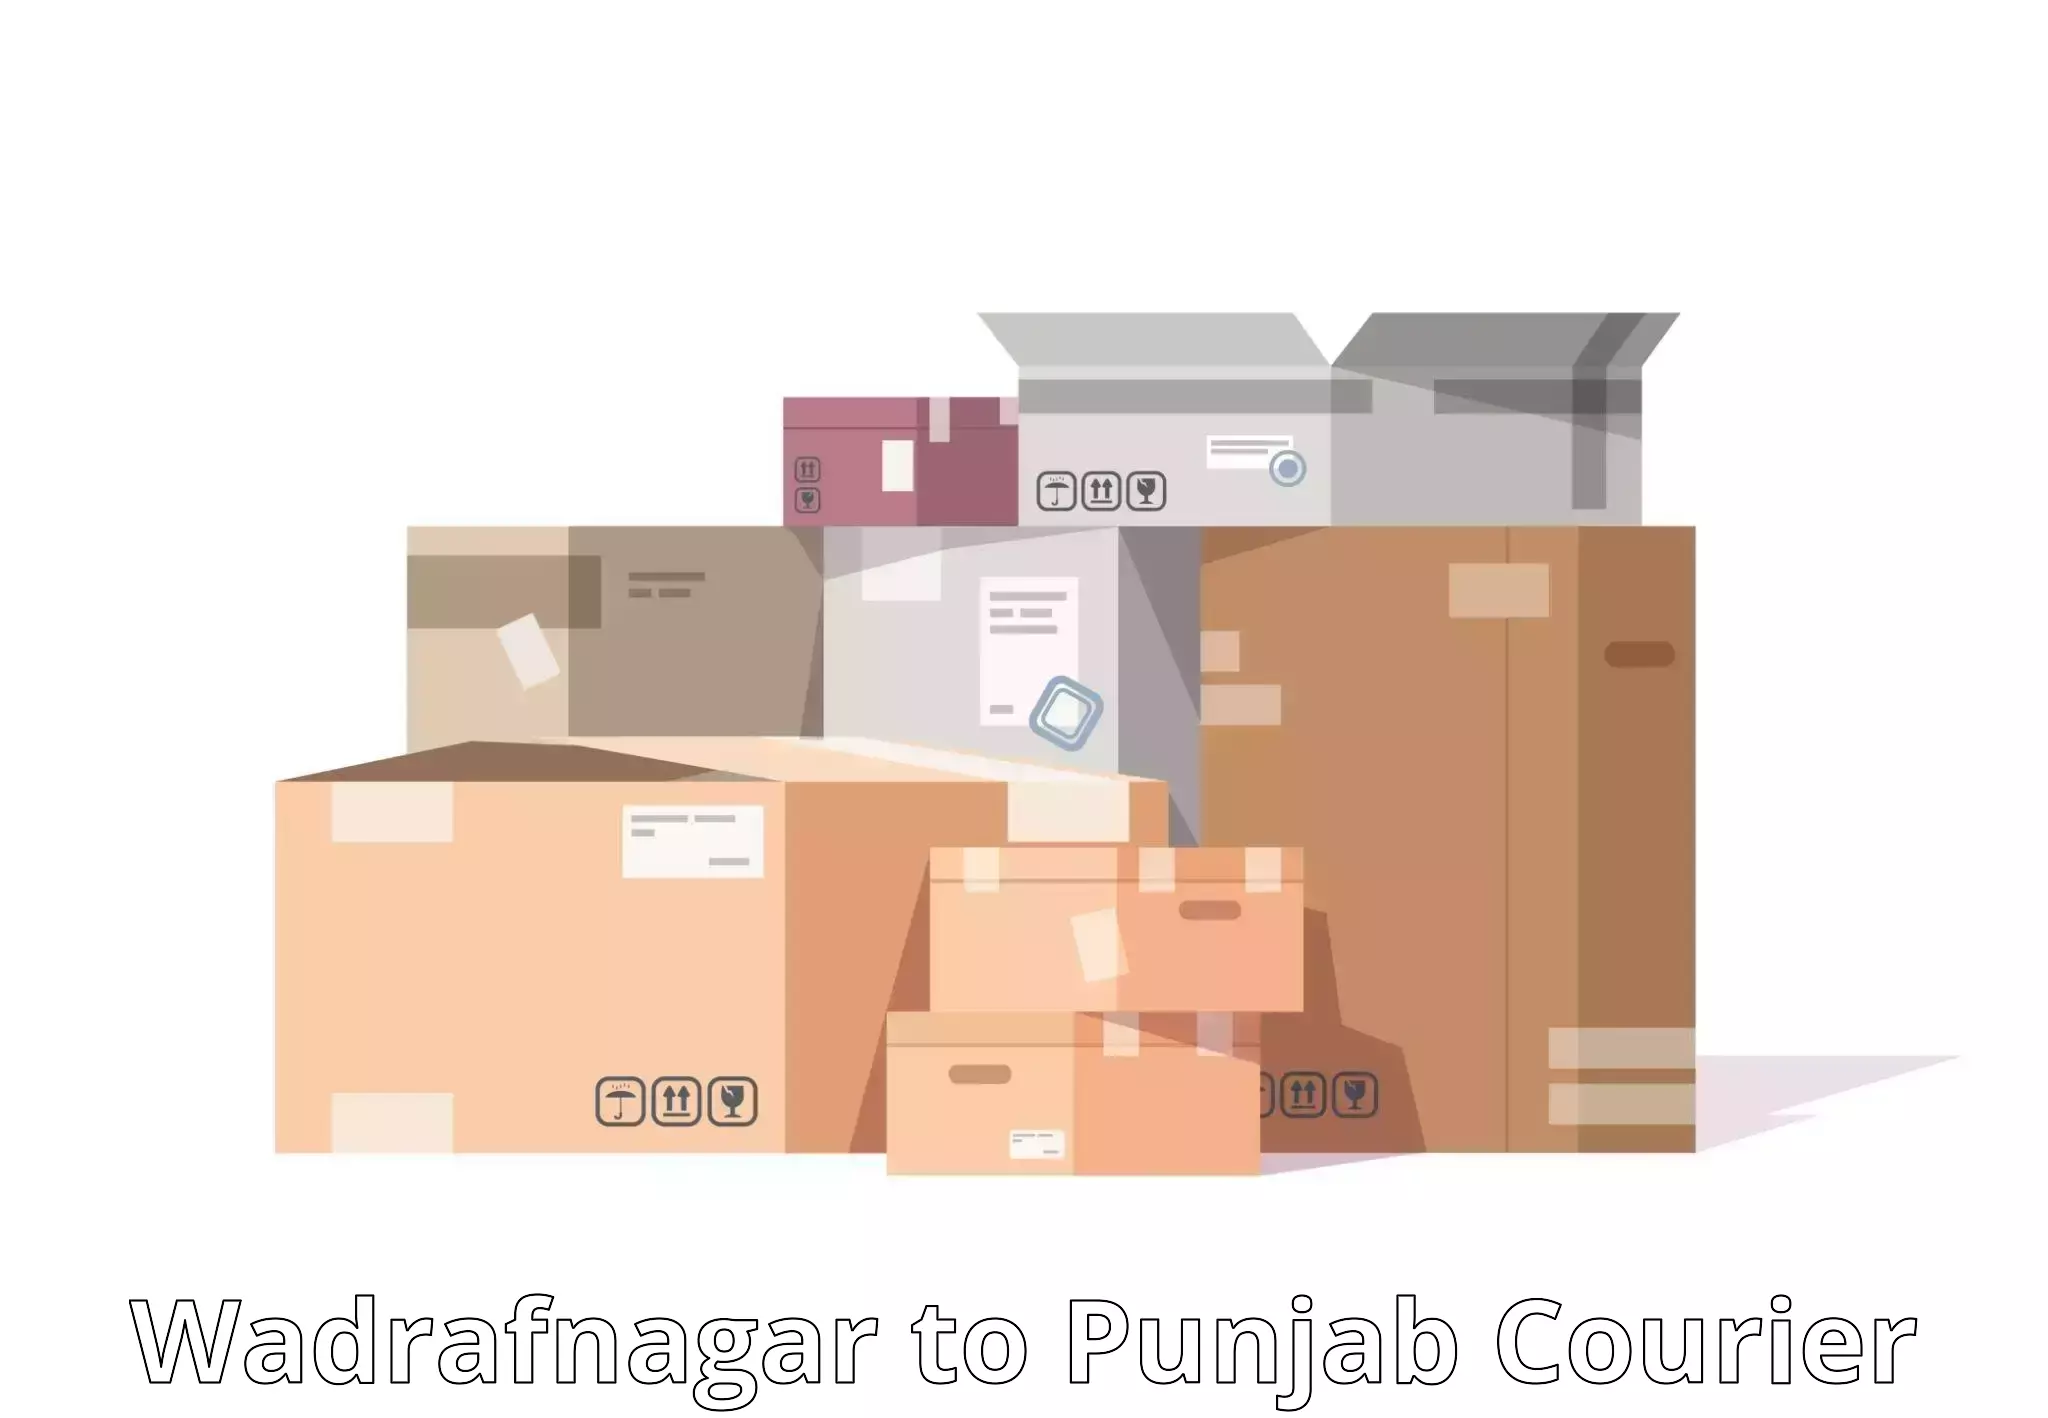 Online courier booking Wadrafnagar to Patti Tarn Tara